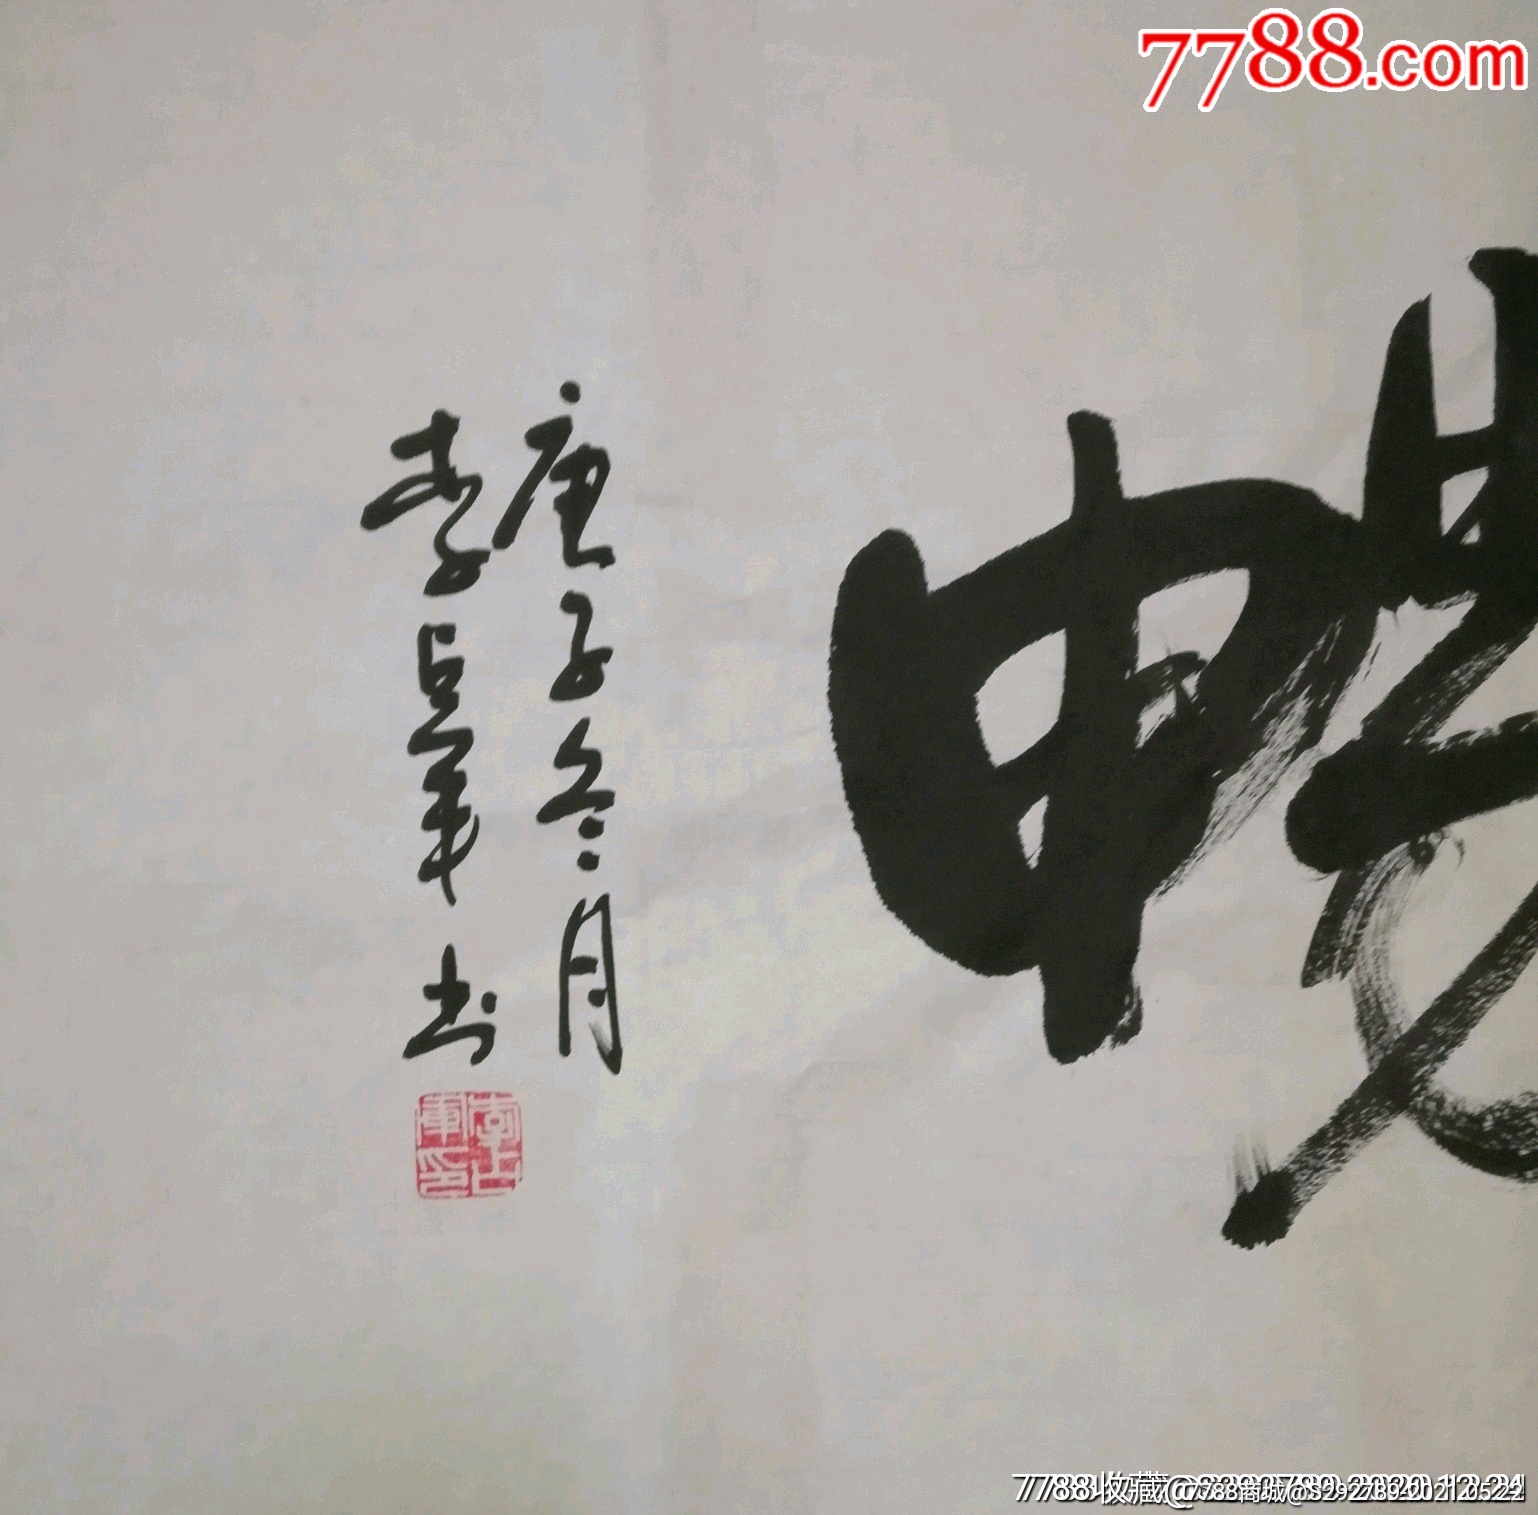 西北地区画马第一人中美协宁夏分会会员李占军手写书法《惠风和畅》